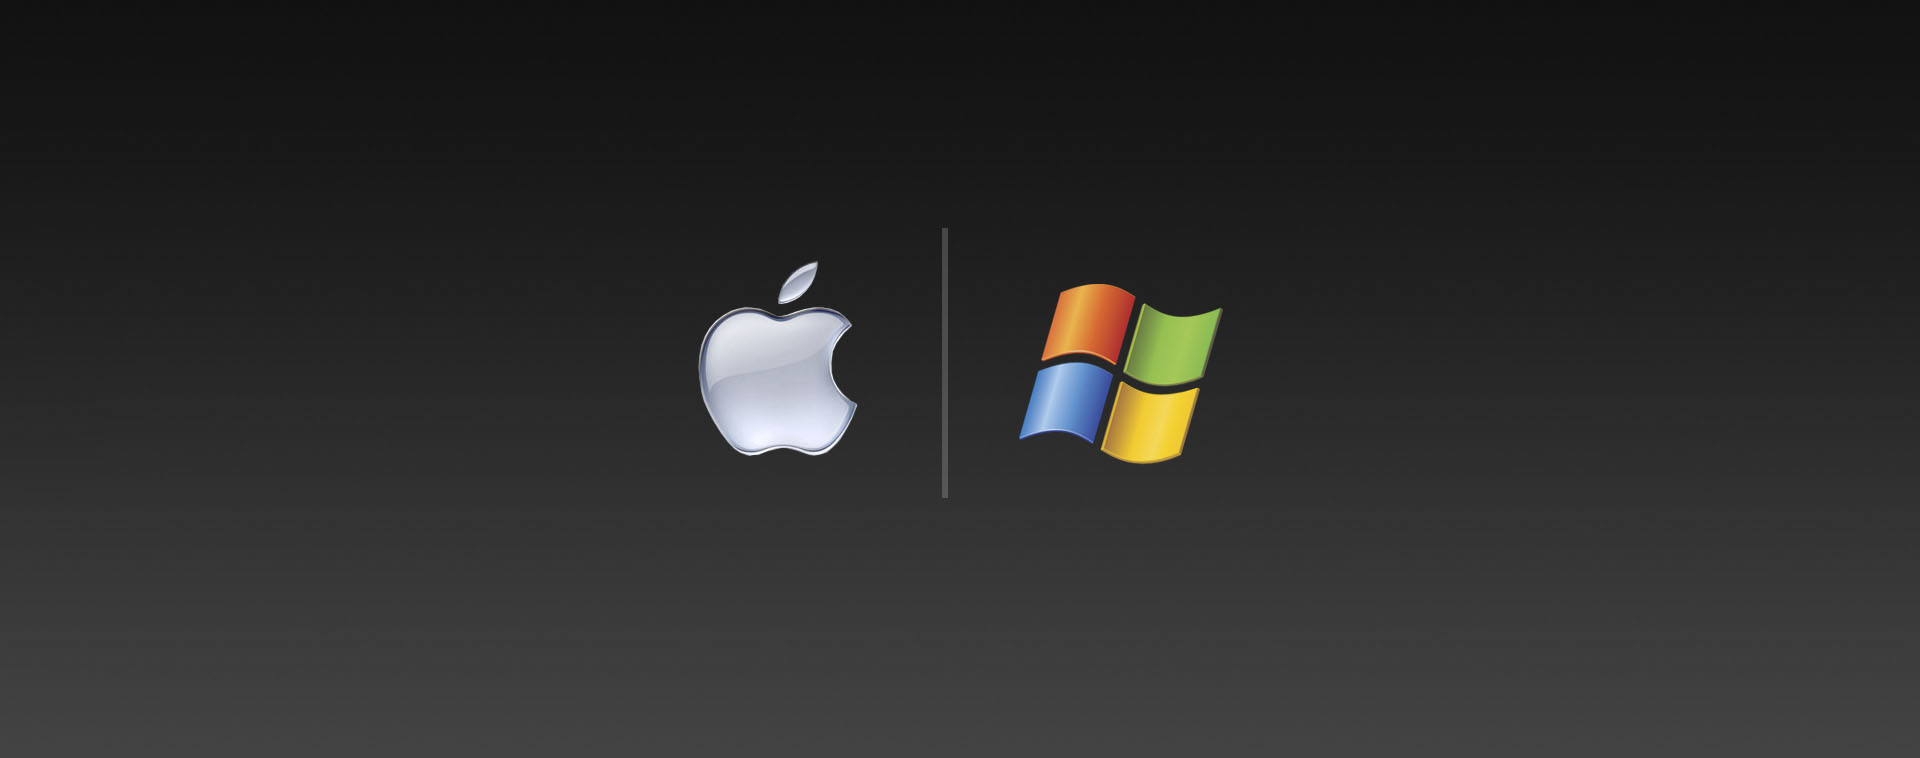 MAC or PC?